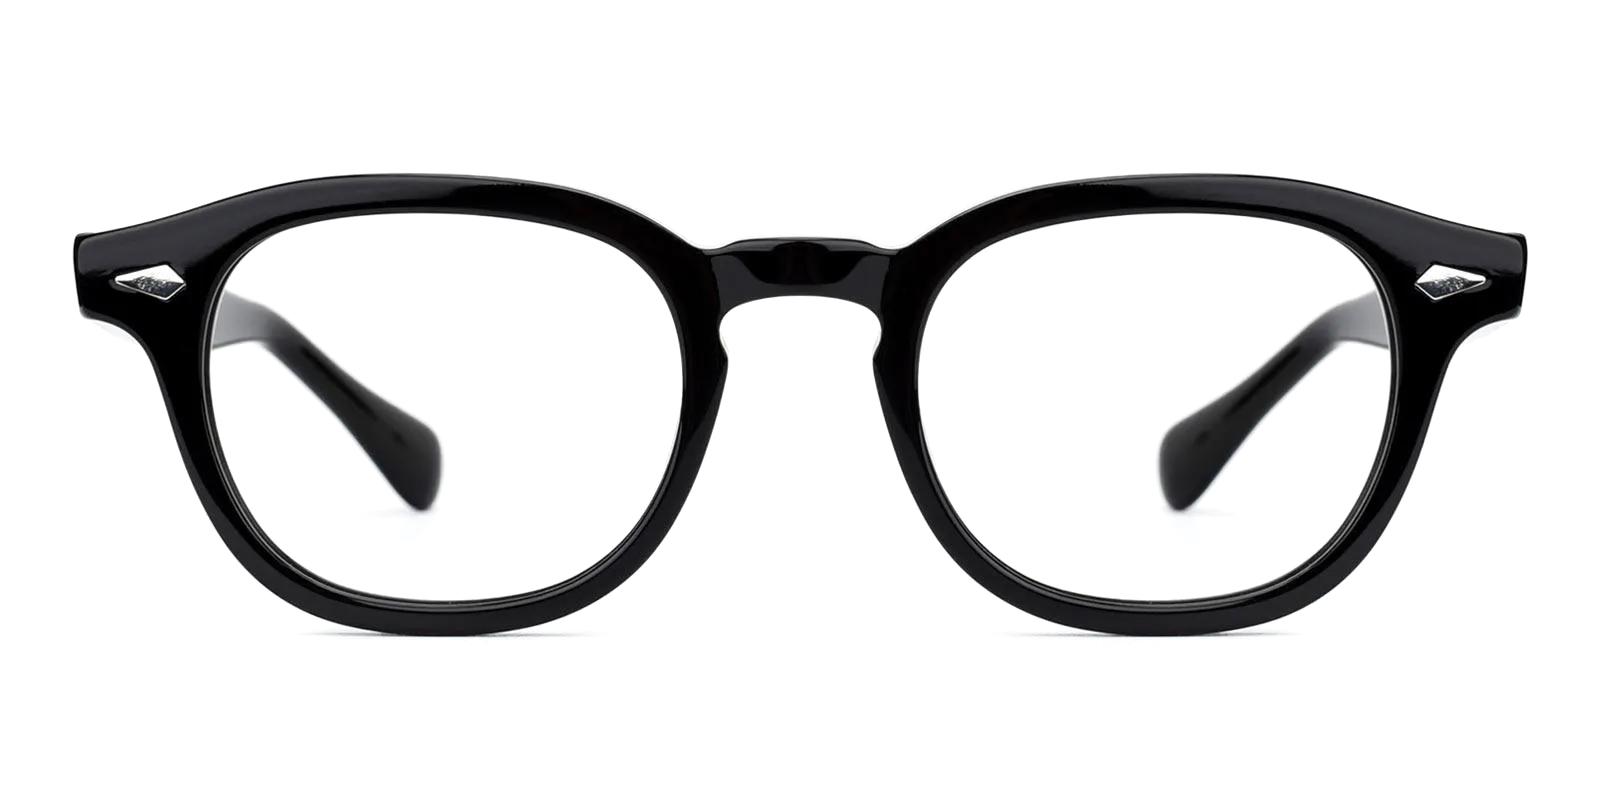 Crist Black Acetate Eyeglasses , UniversalBridgeFit Frames from ABBE Glasses